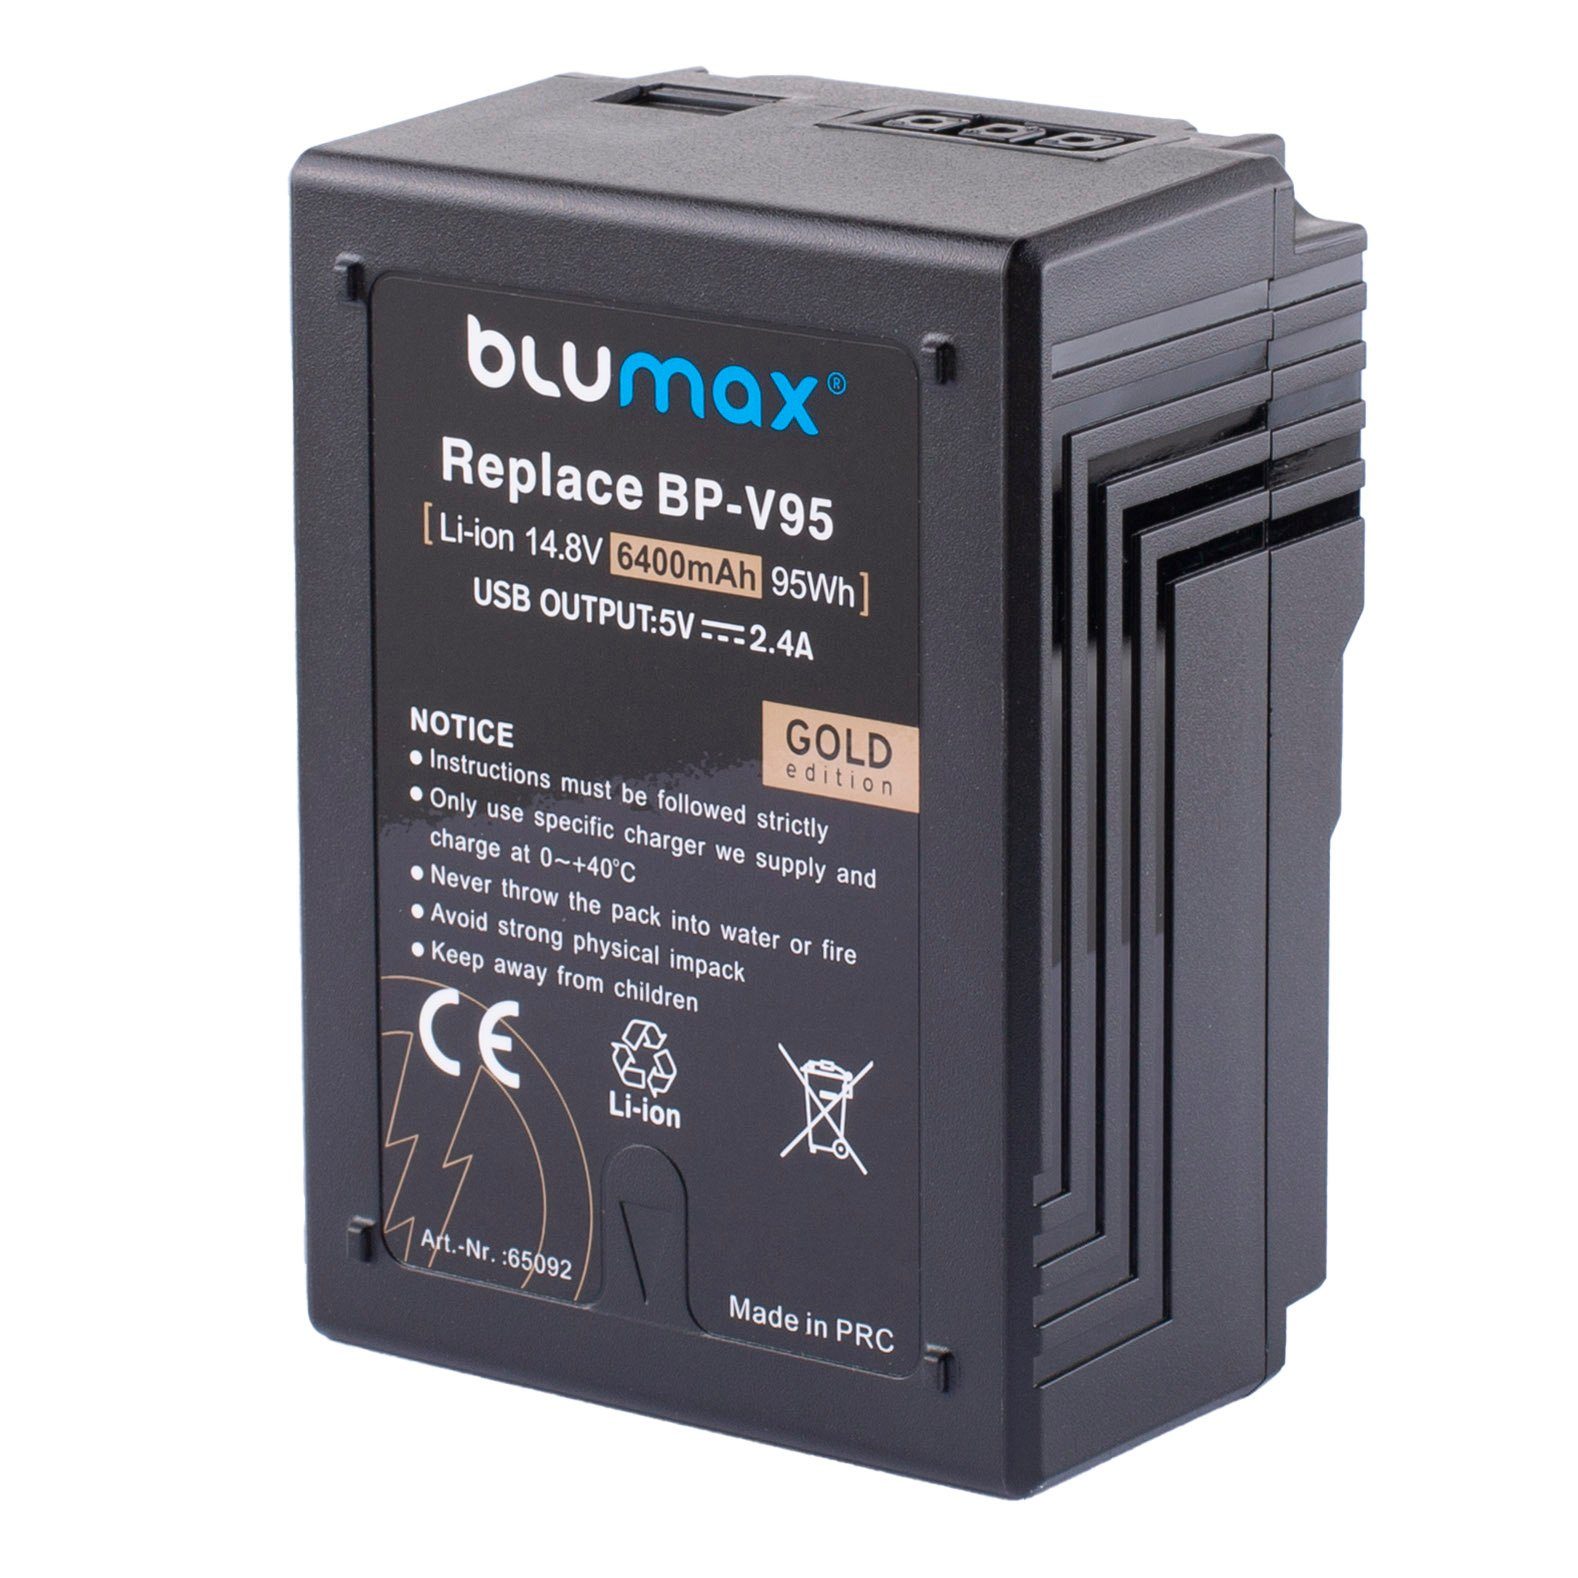 Blumax Akku passend BP-V95 Sony für mAh Kamera-Akku (14,8V) 6400